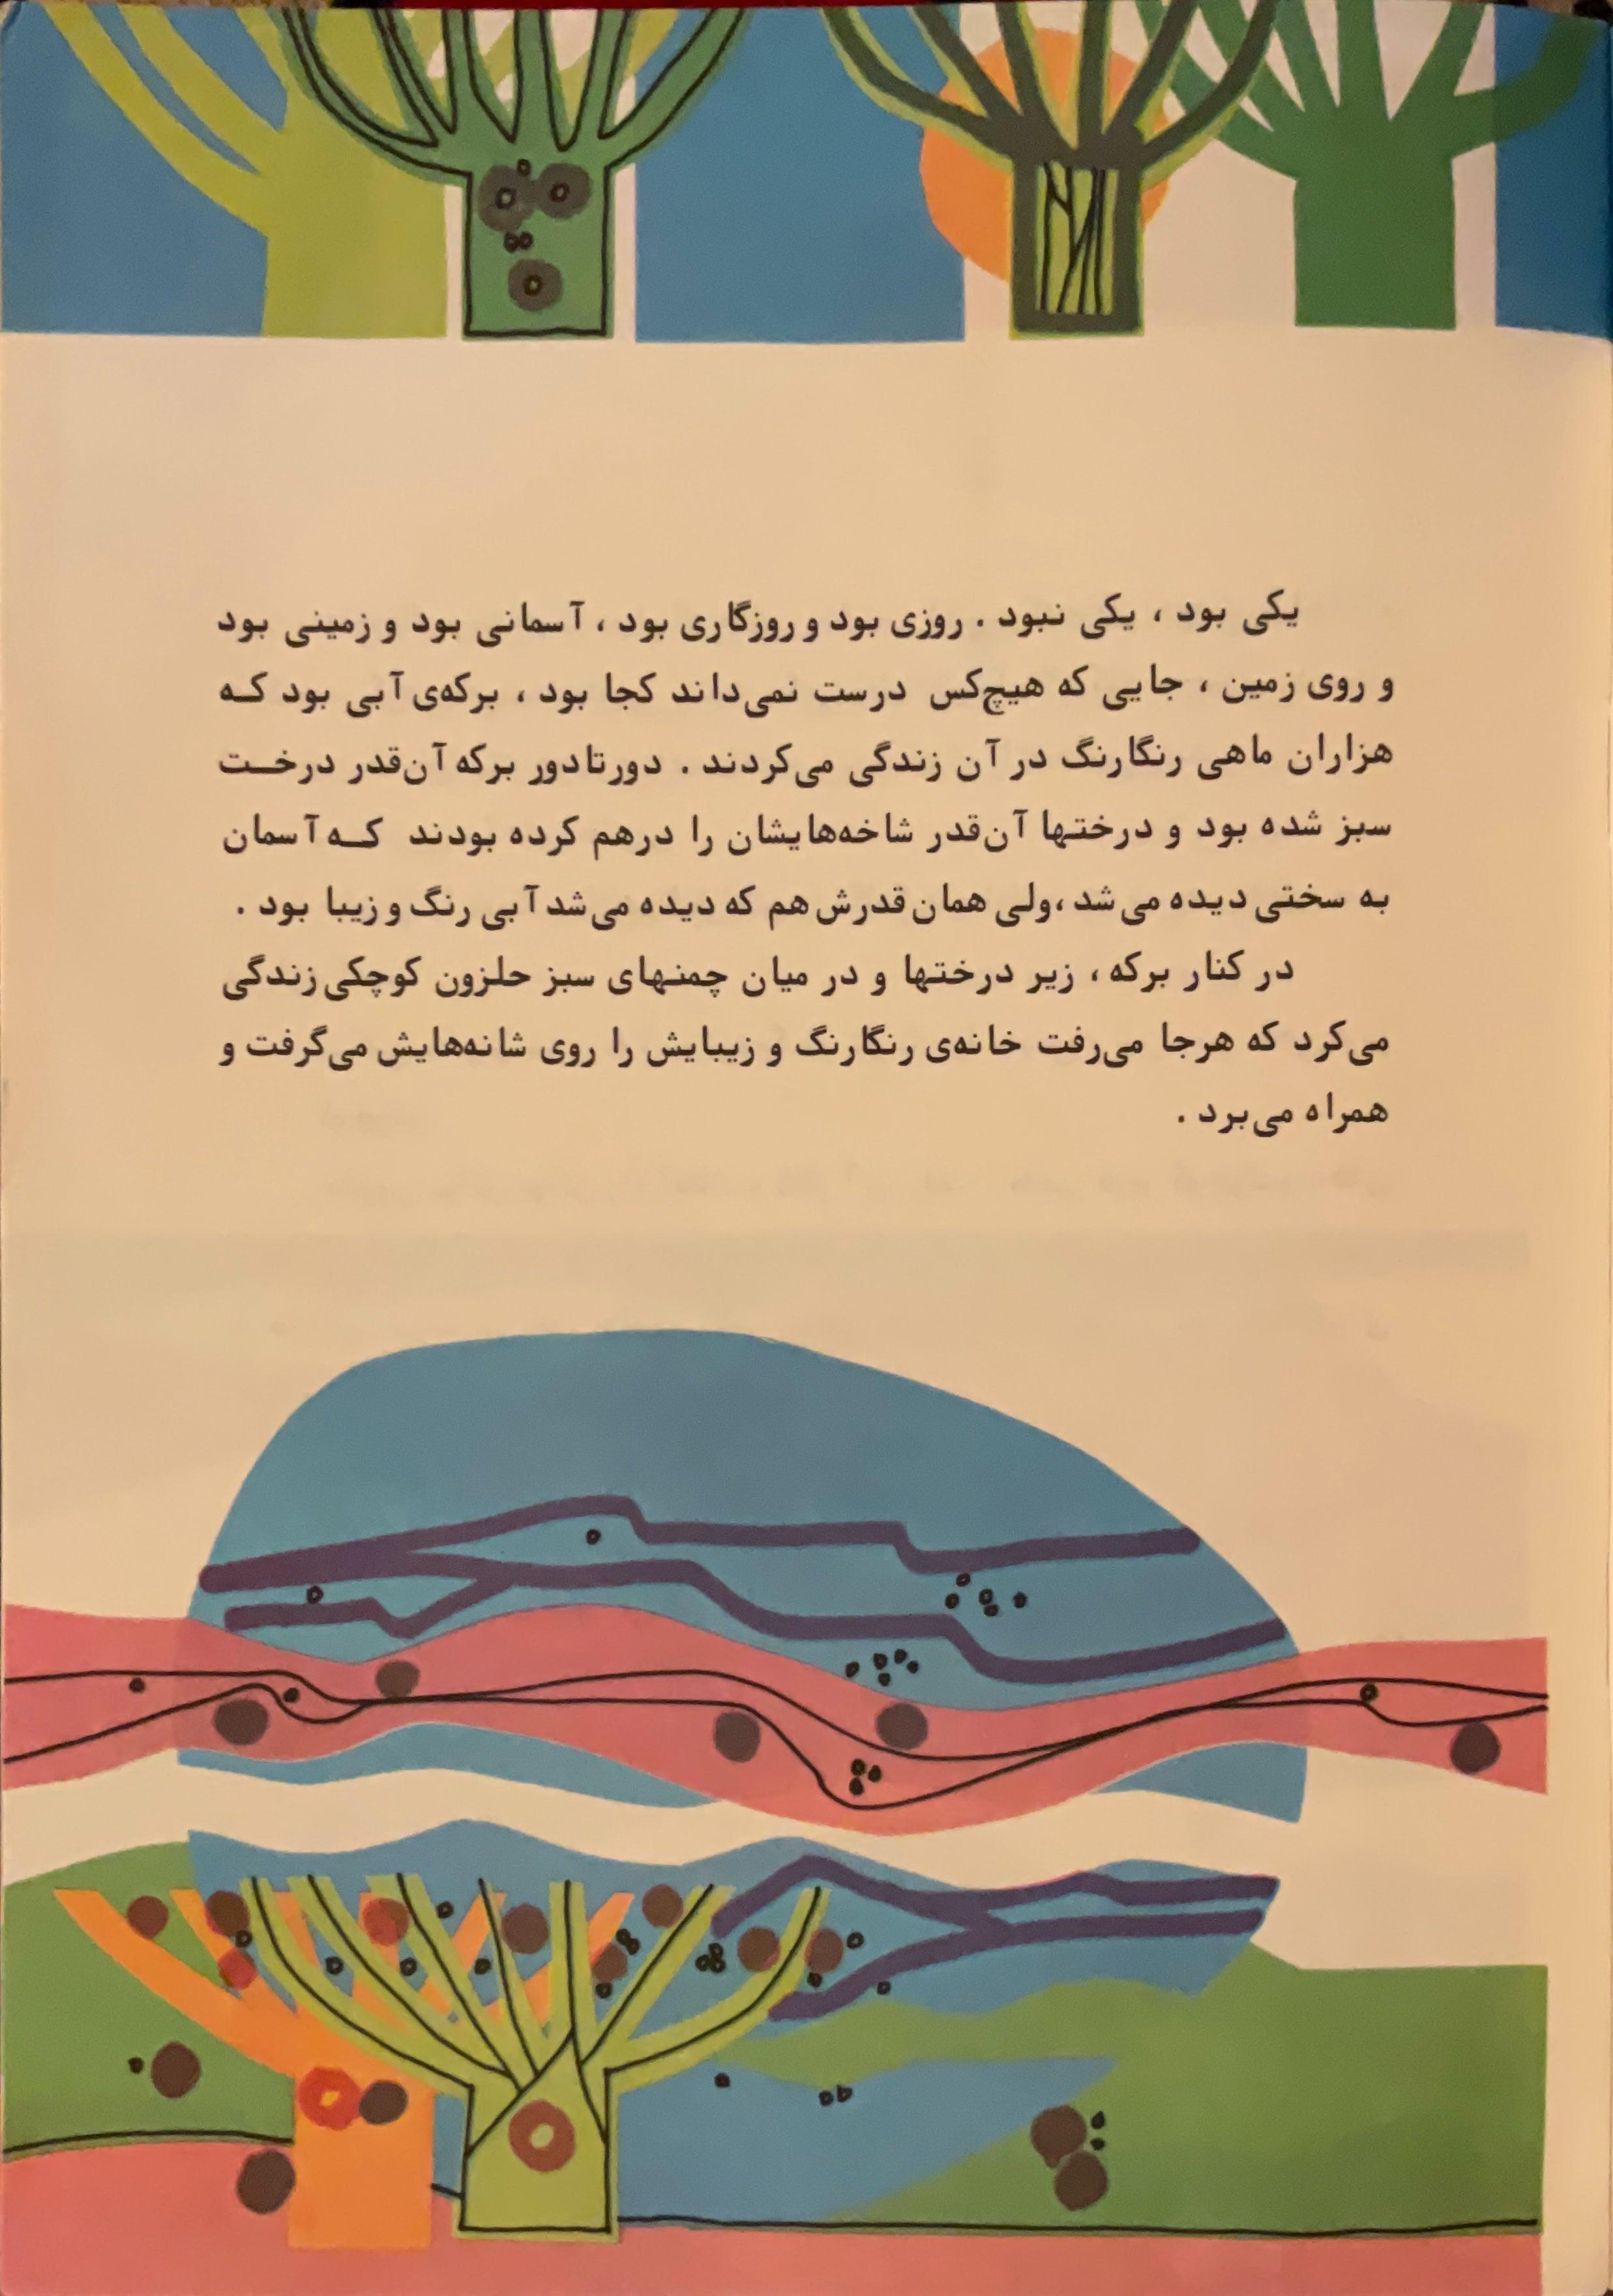 A Snail That Lost Its Home (Farsi) - KHAJISTAN™